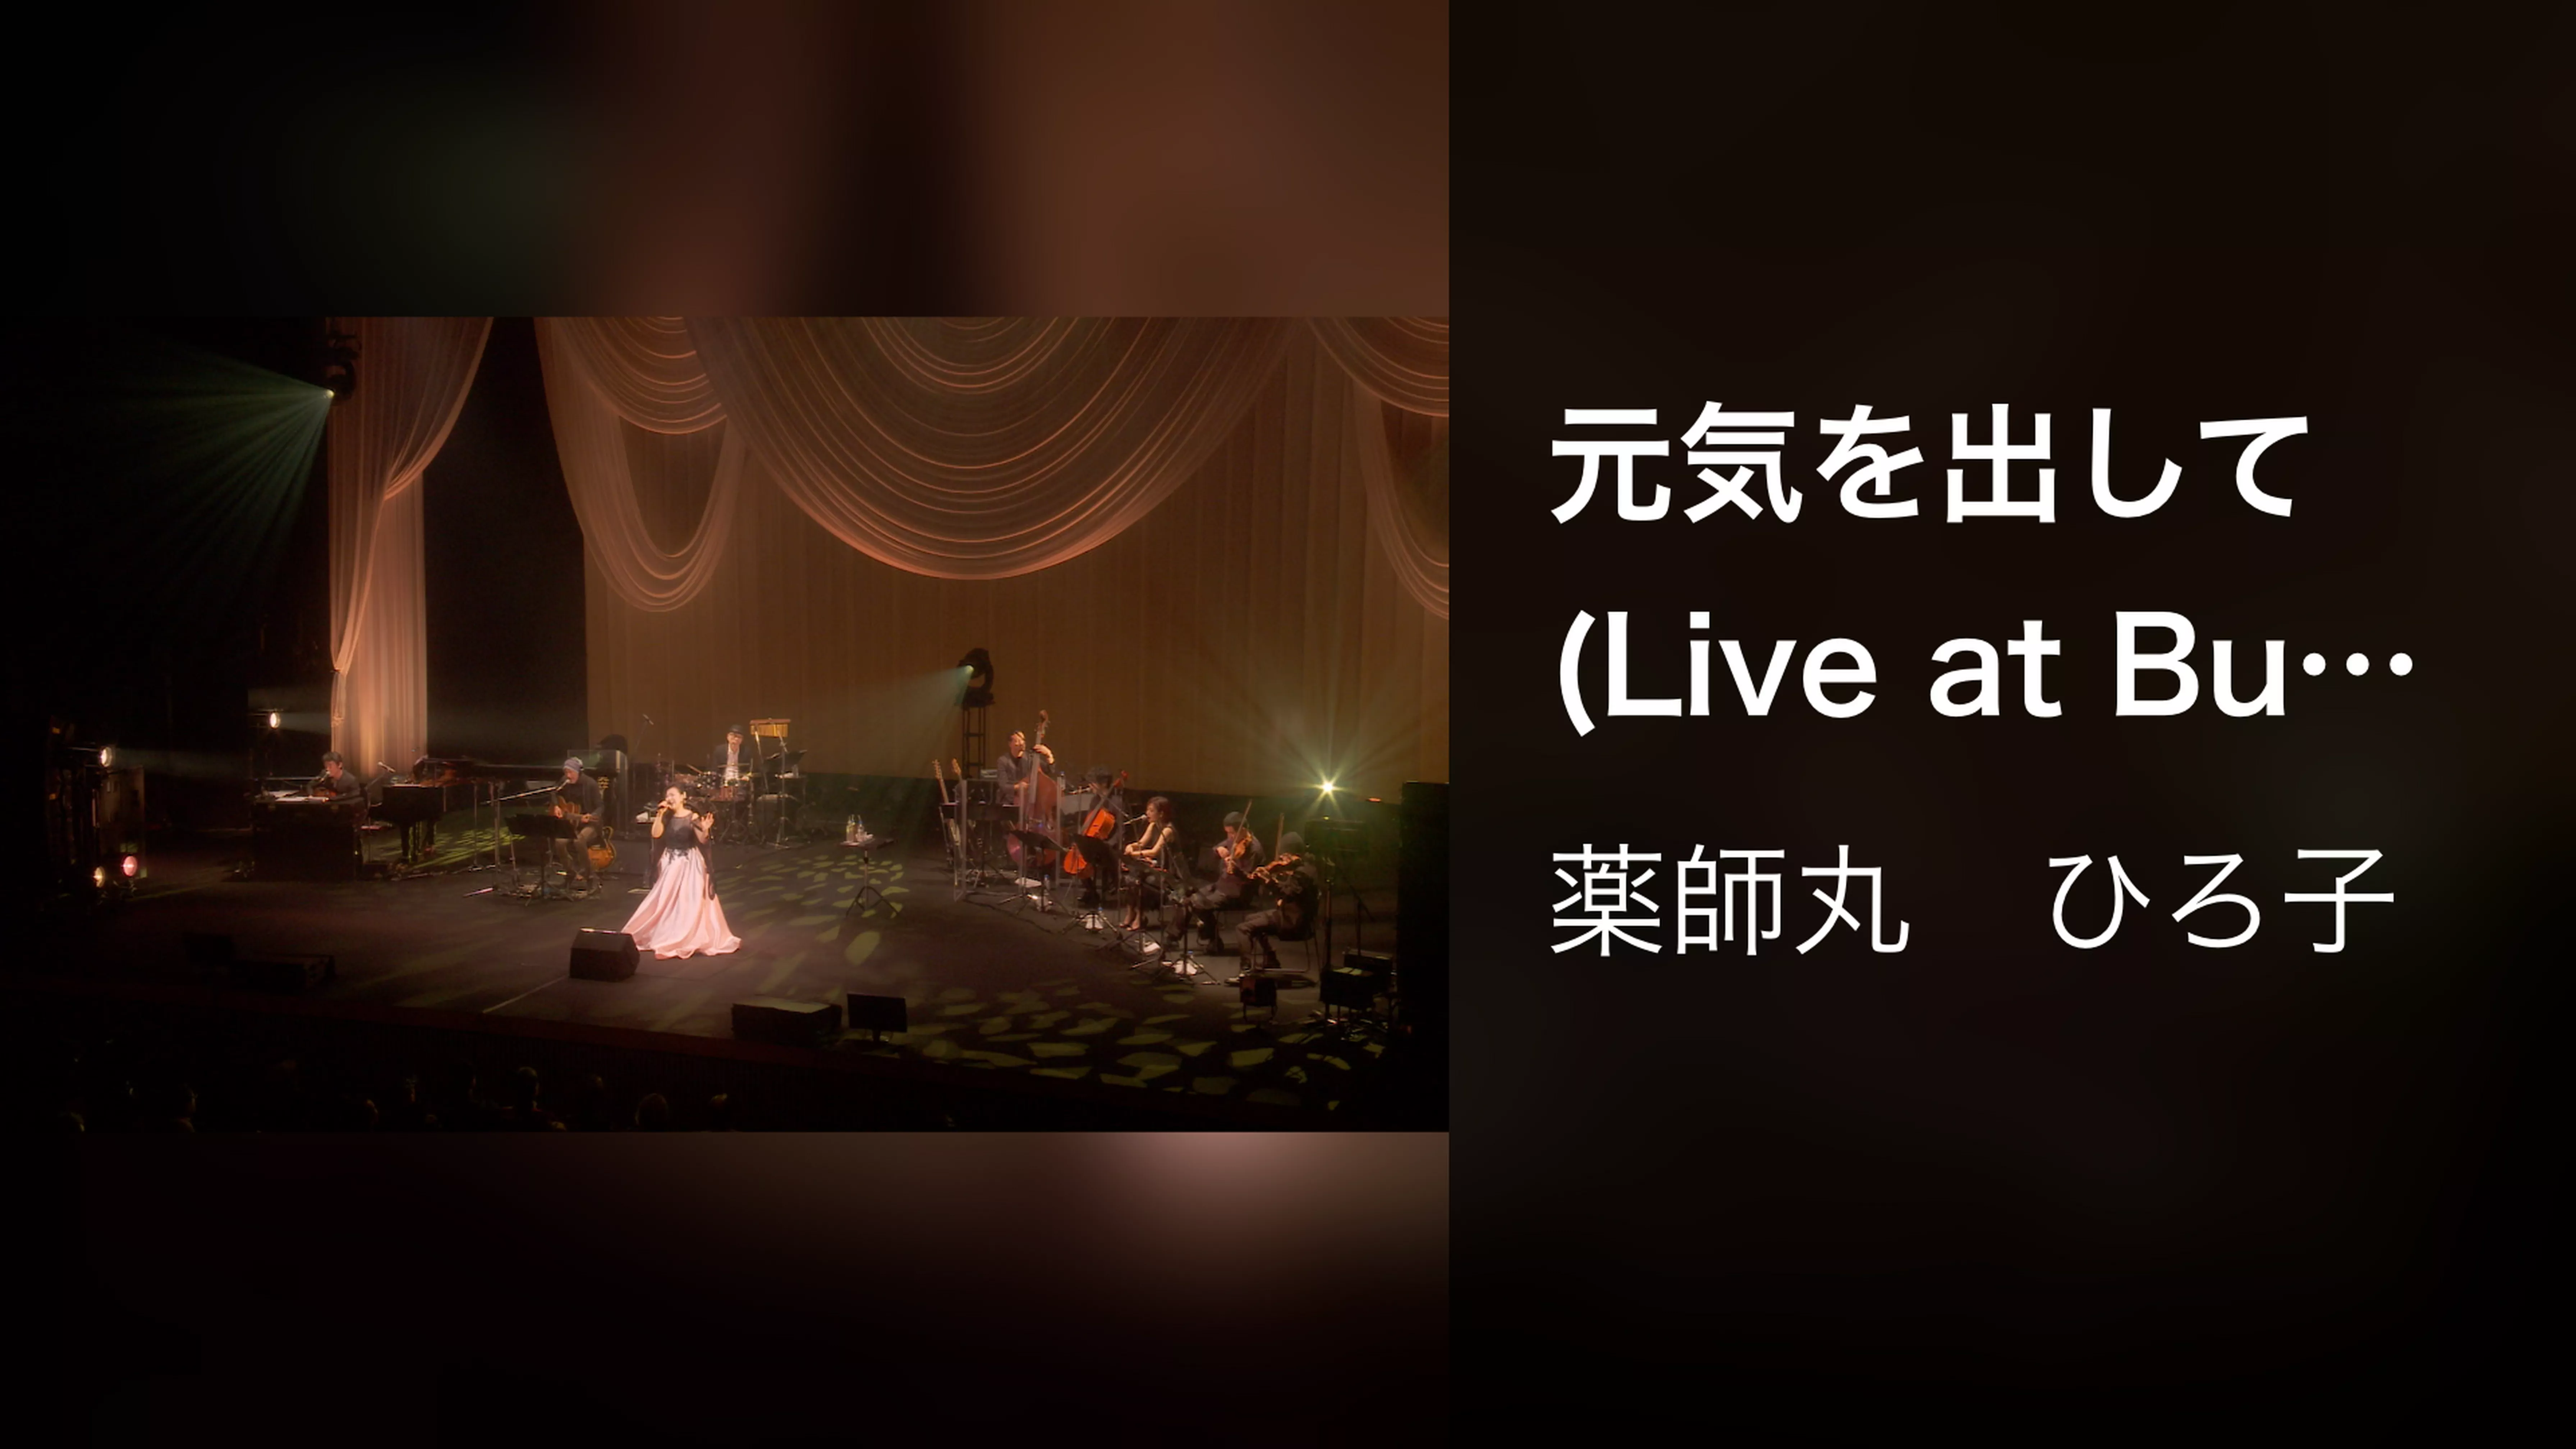 元気を出して (Live at Bunkamura Orchard Hall on February 16, 2018)